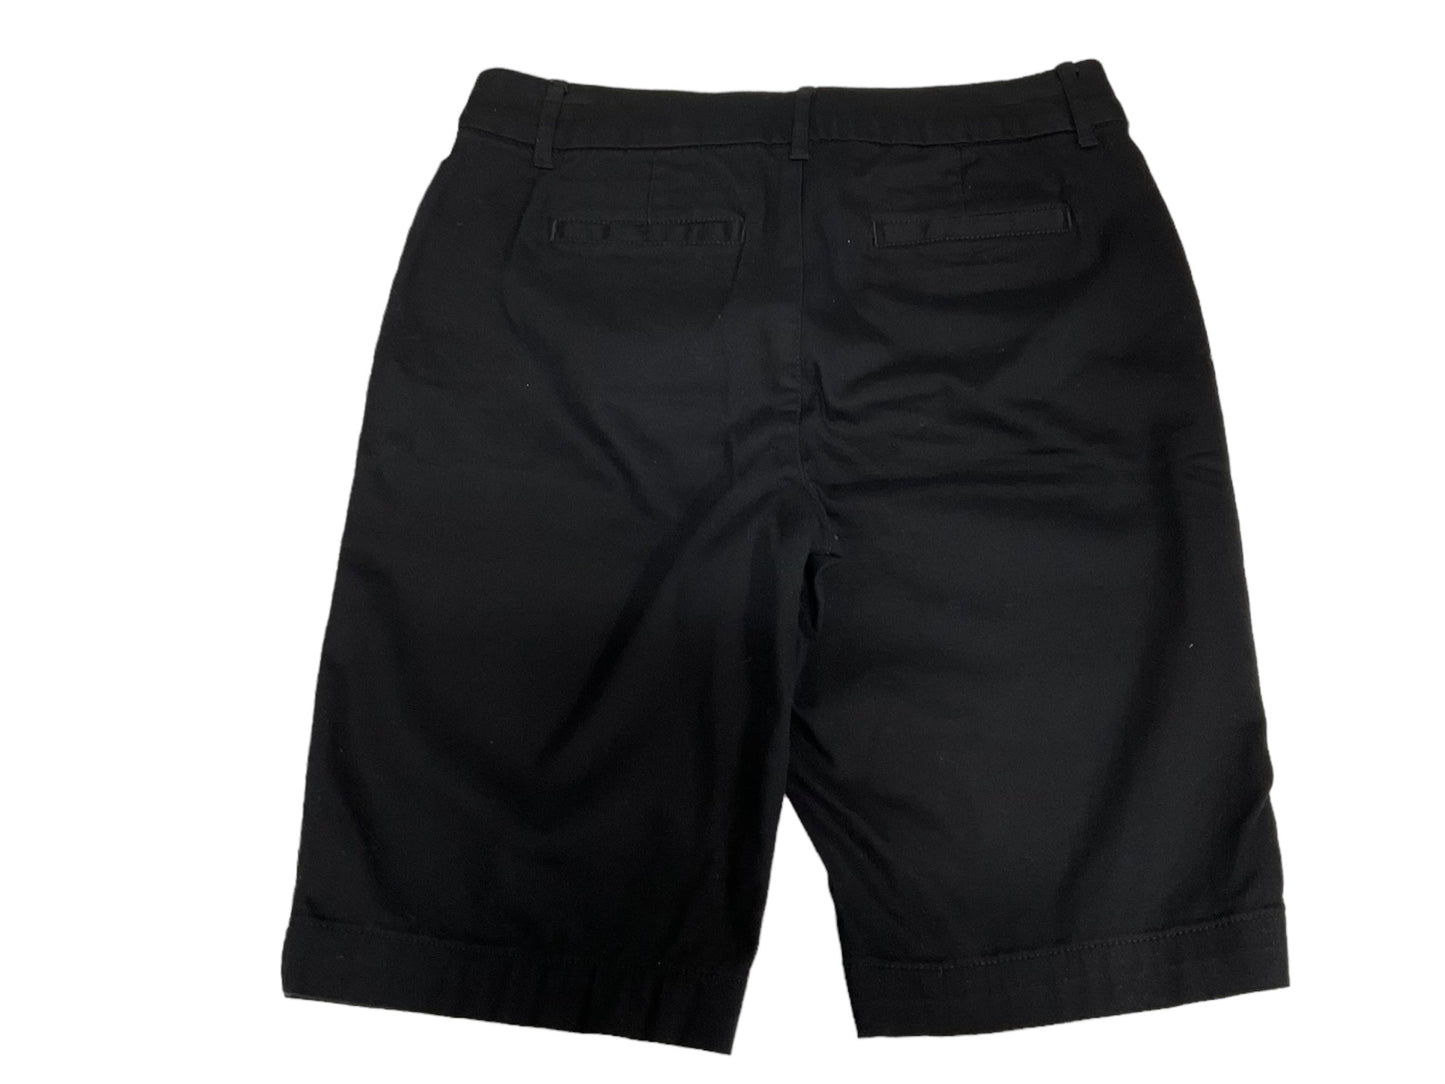 Black Shorts St. John, Size 4